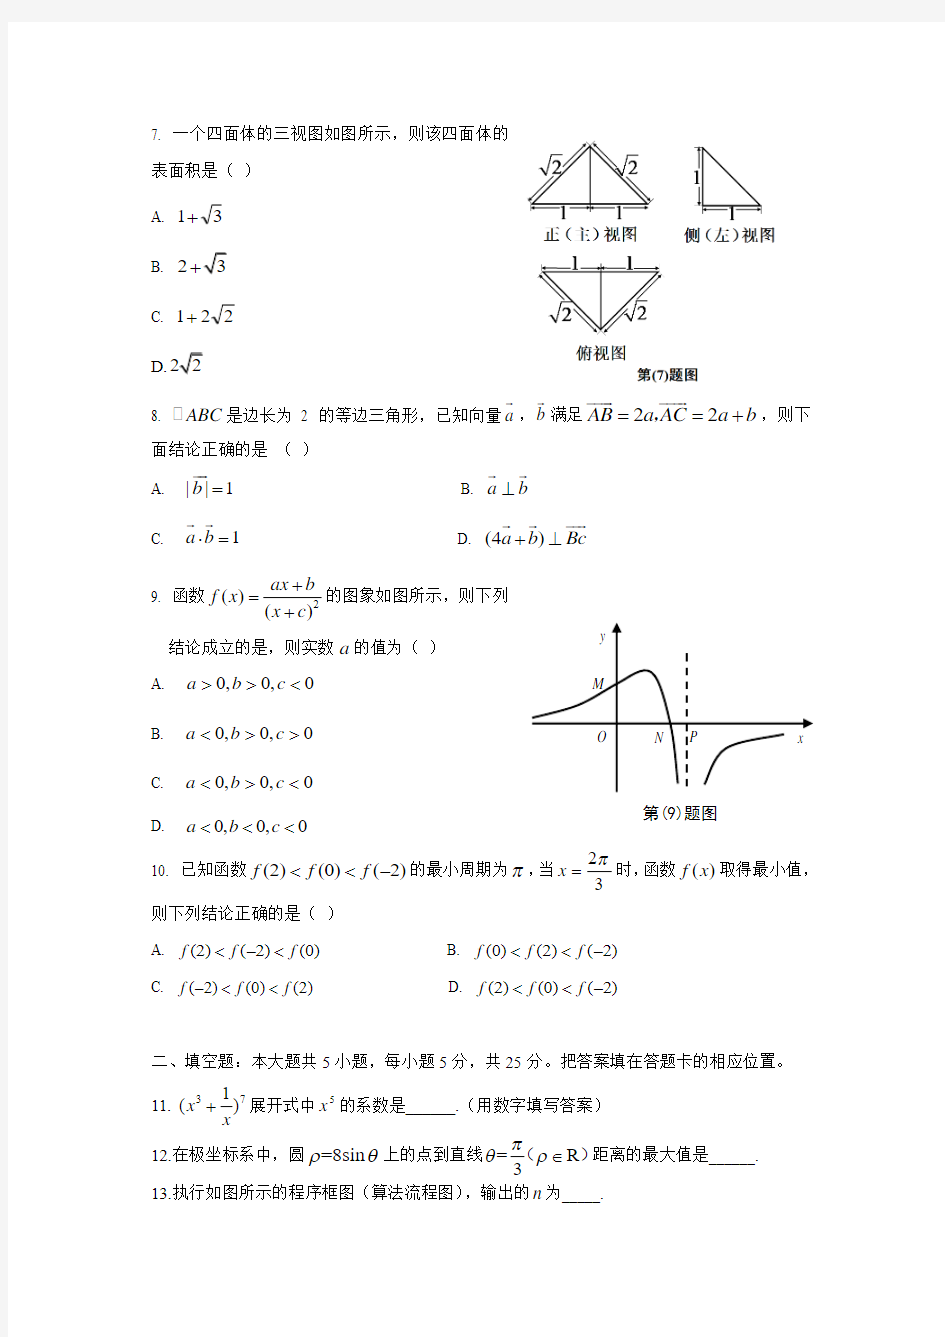 2015年-高考试卷及答案解析-数学-理科-安徽(精校版)